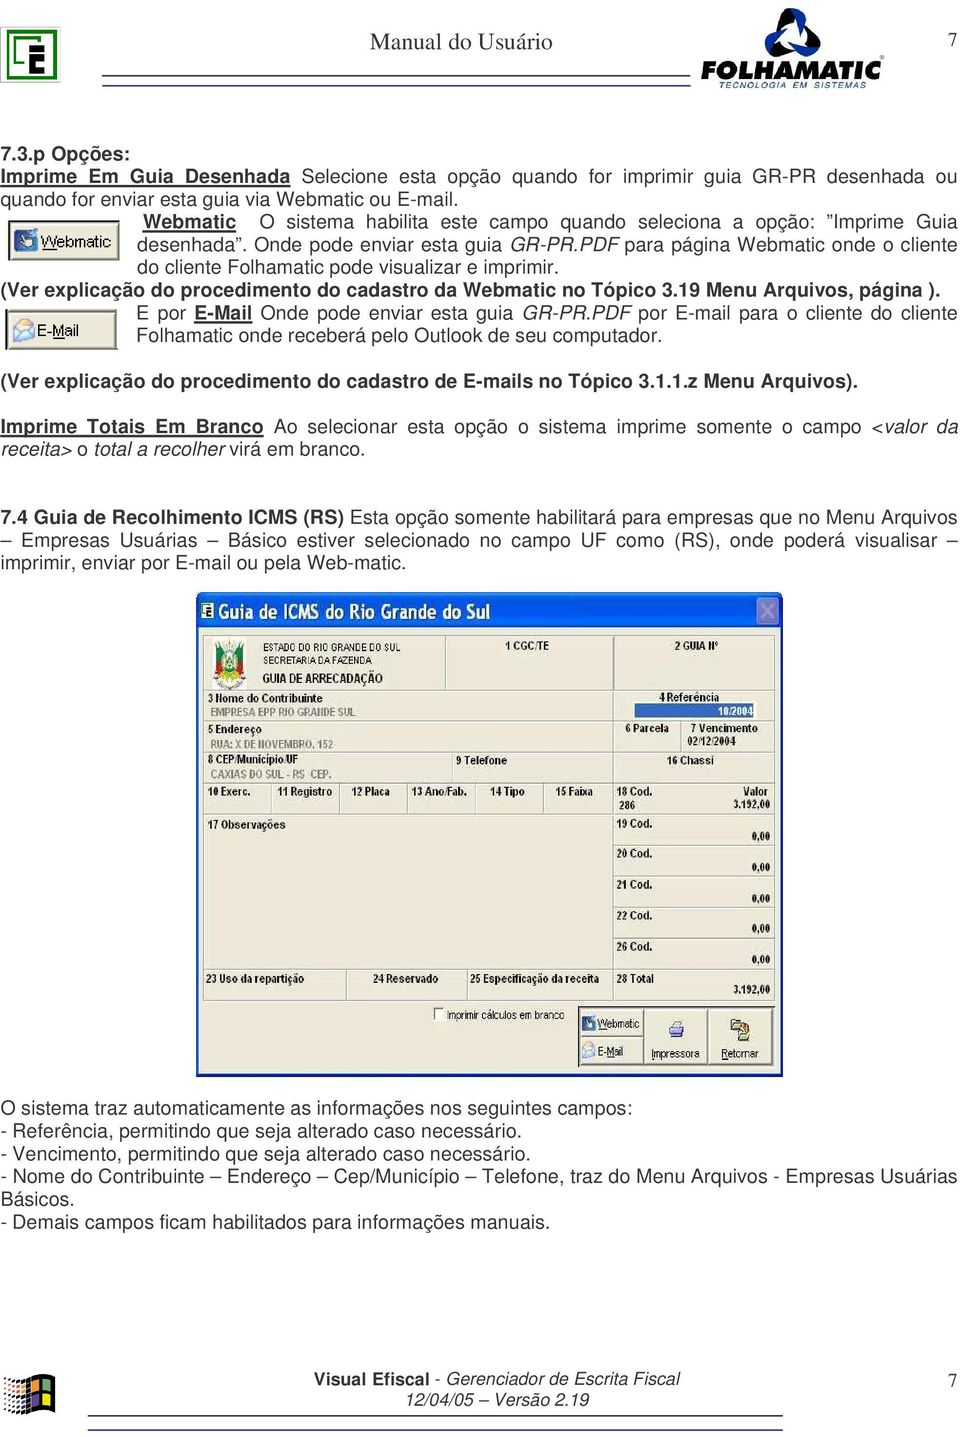 PDF para página Webmatic onde o cliente do cliente Folhamatic pode visualizar e imprimir. (Ver explicação do procedimento do cadastro da Webmatic no Tópico 3.19 Menu Arquivos, página ).